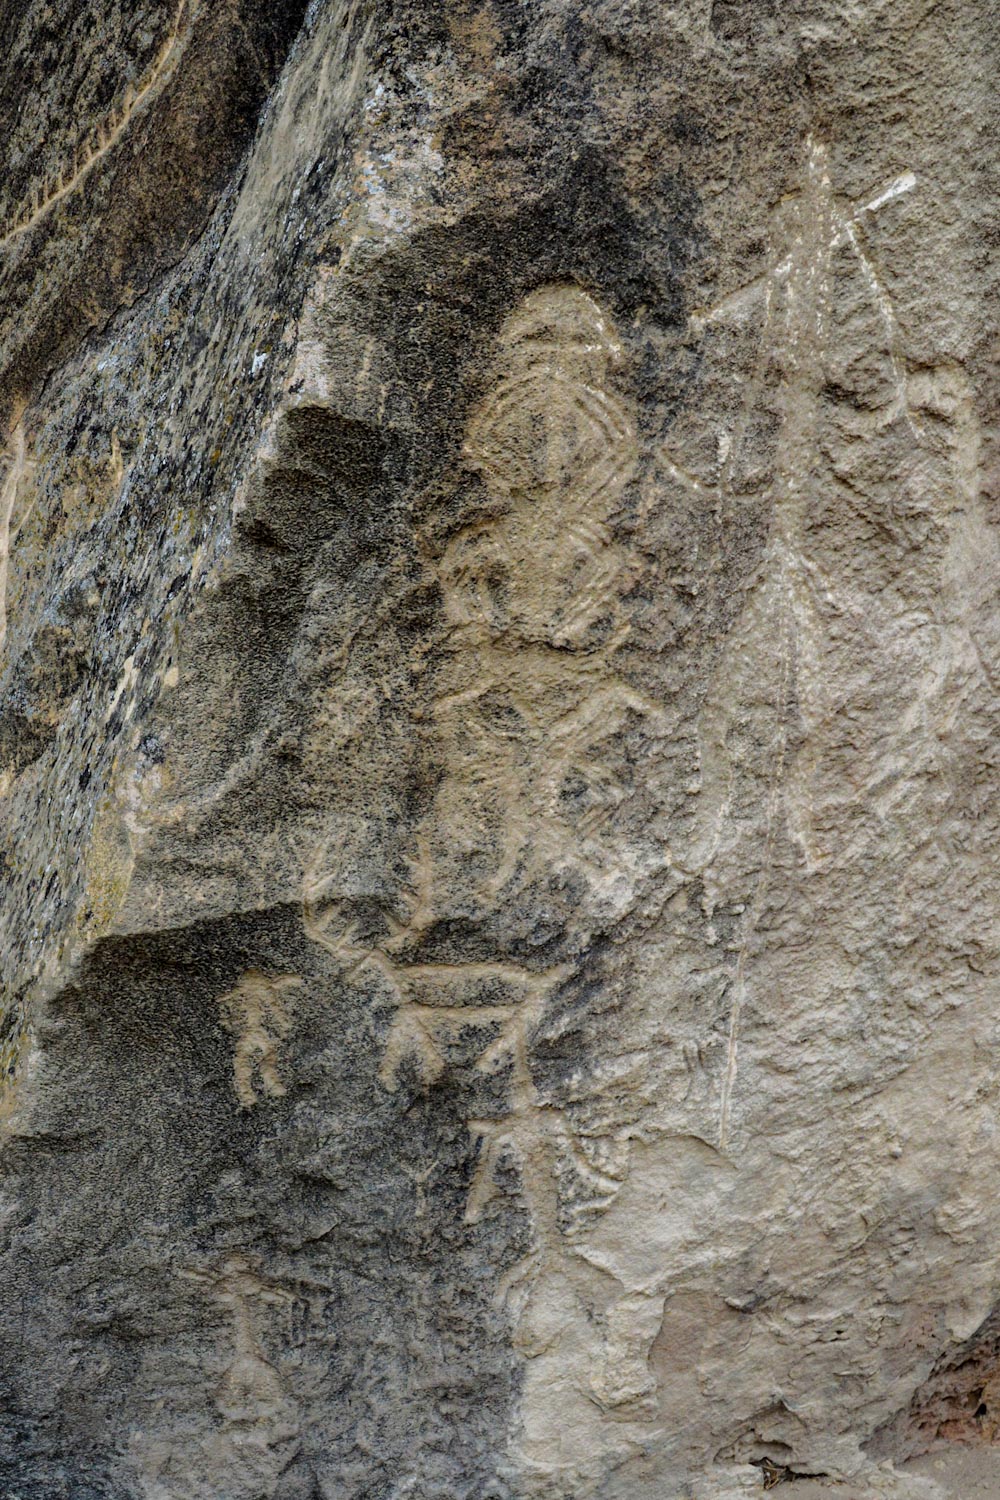 гравировка на камне времен палеолита